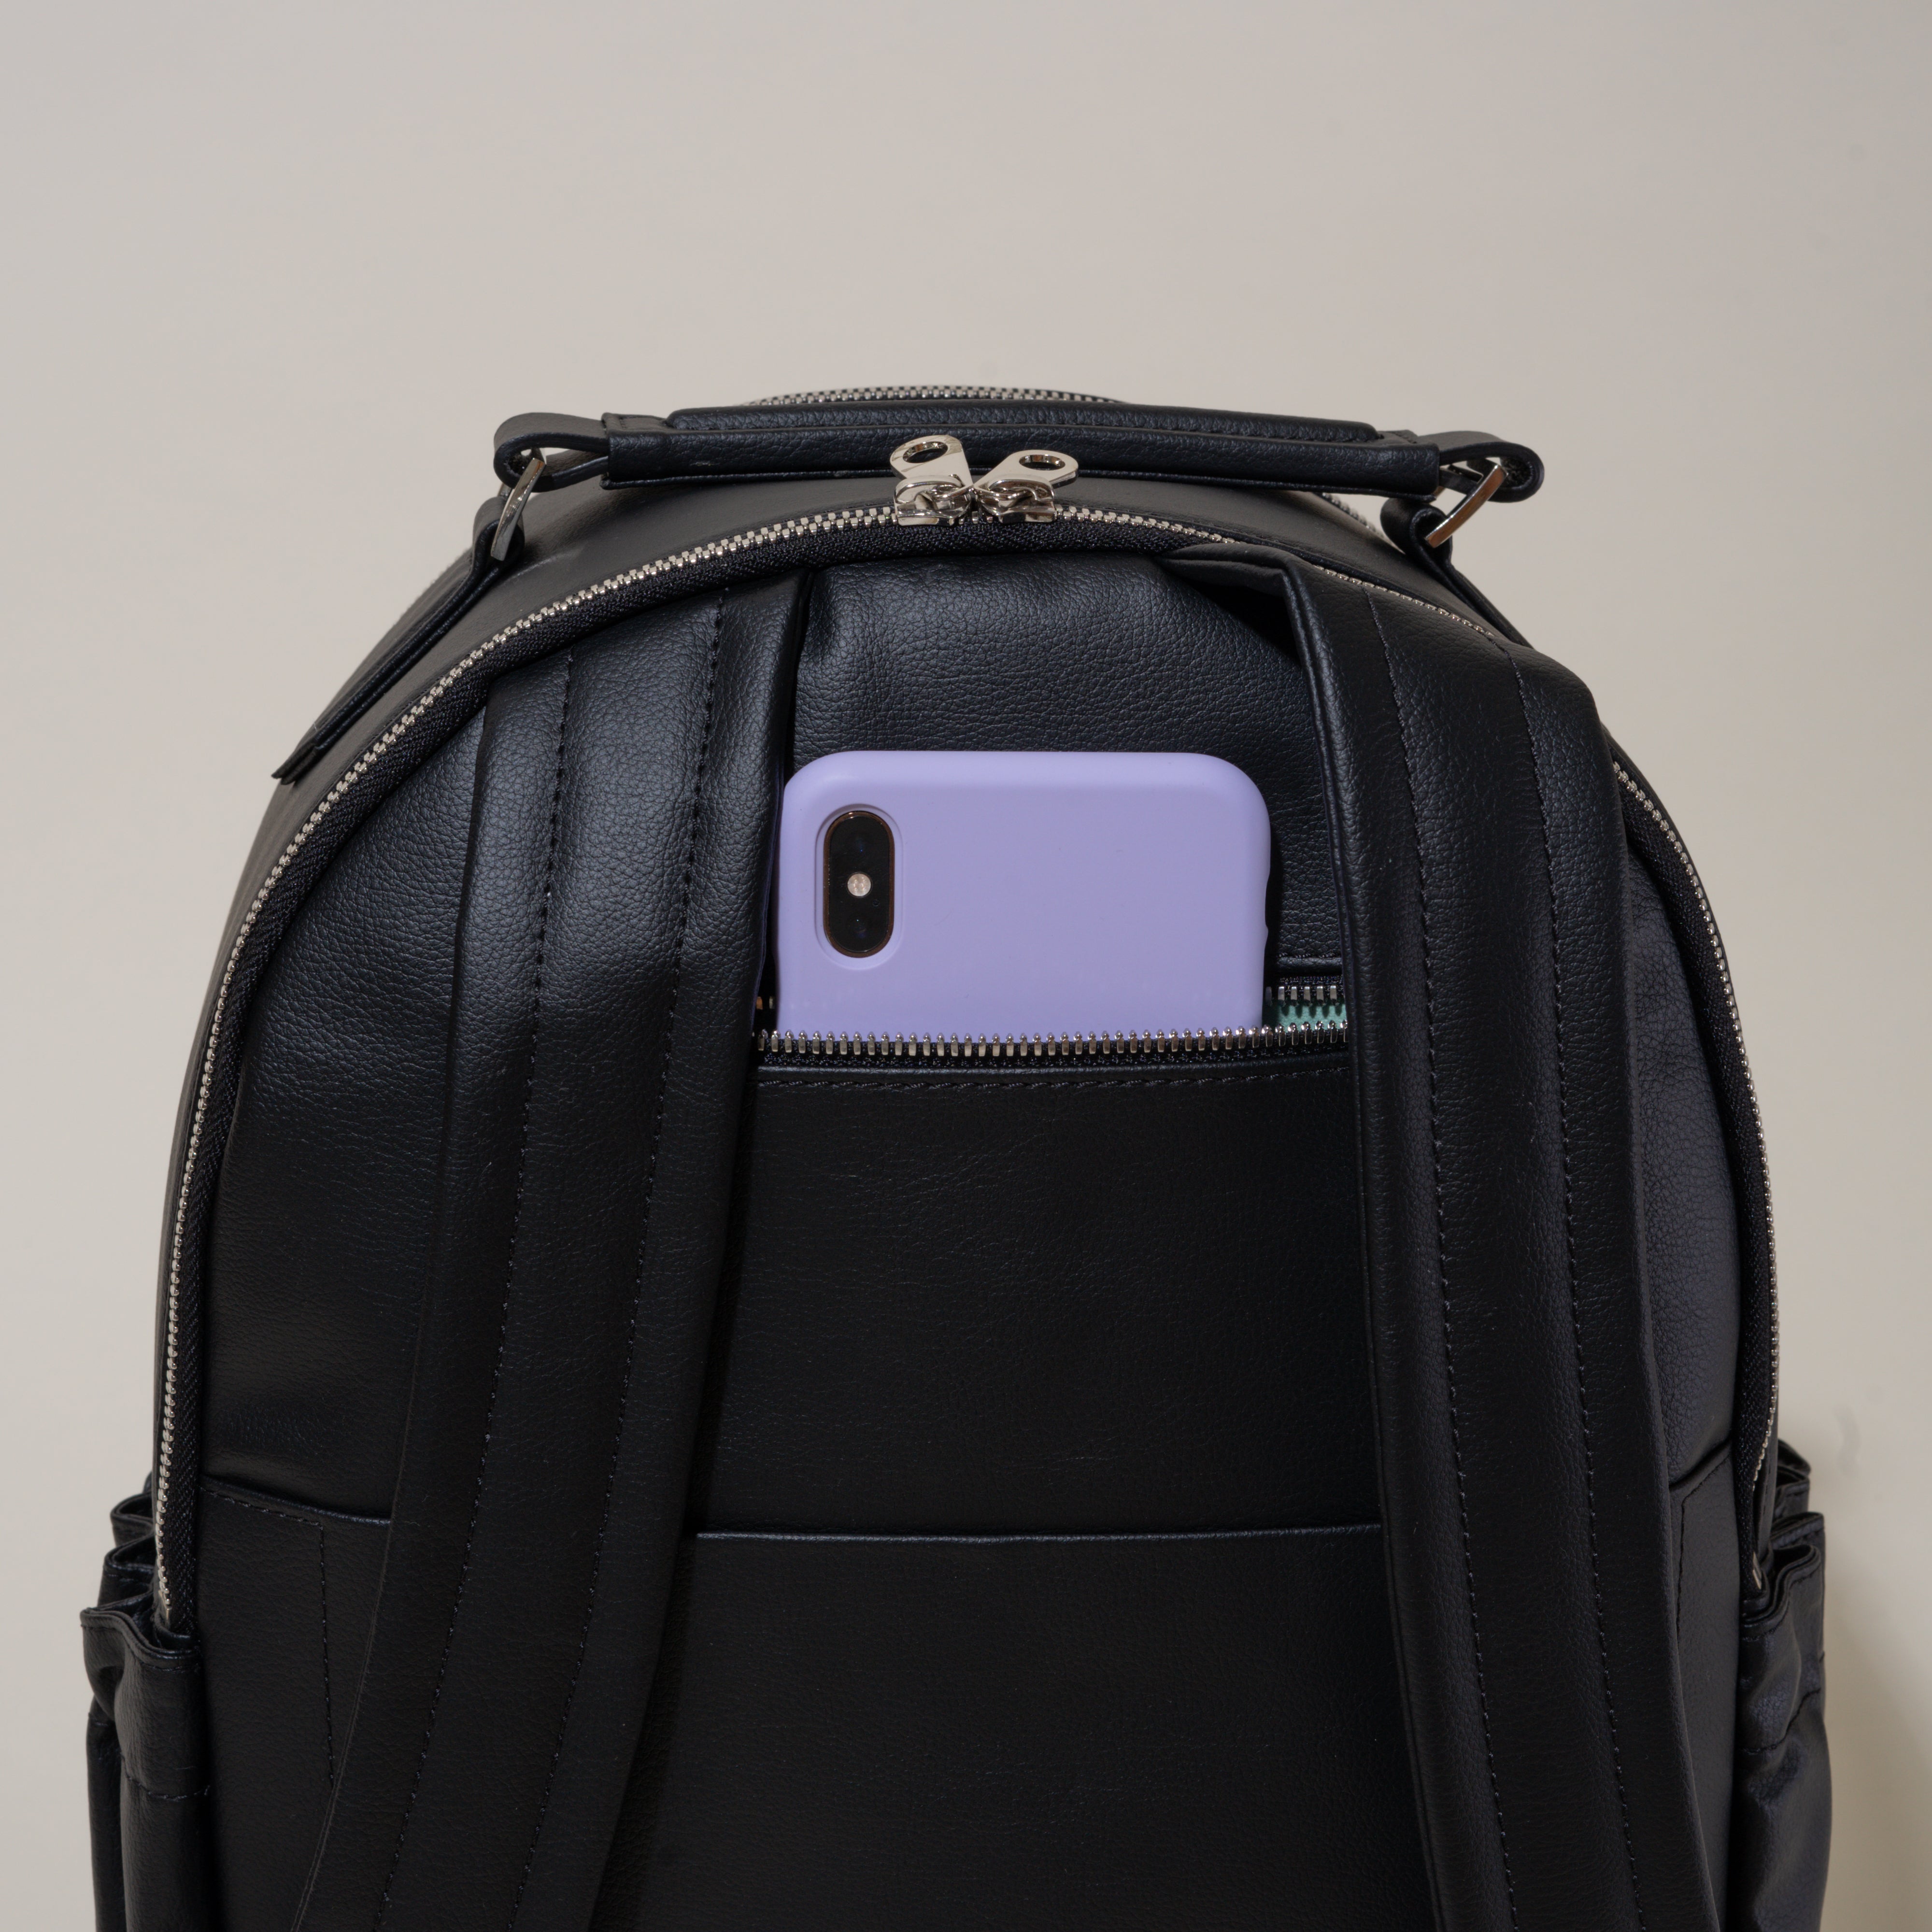 Allegorie Designs Apple Skin Backpack integrated Phone Pocket Close up